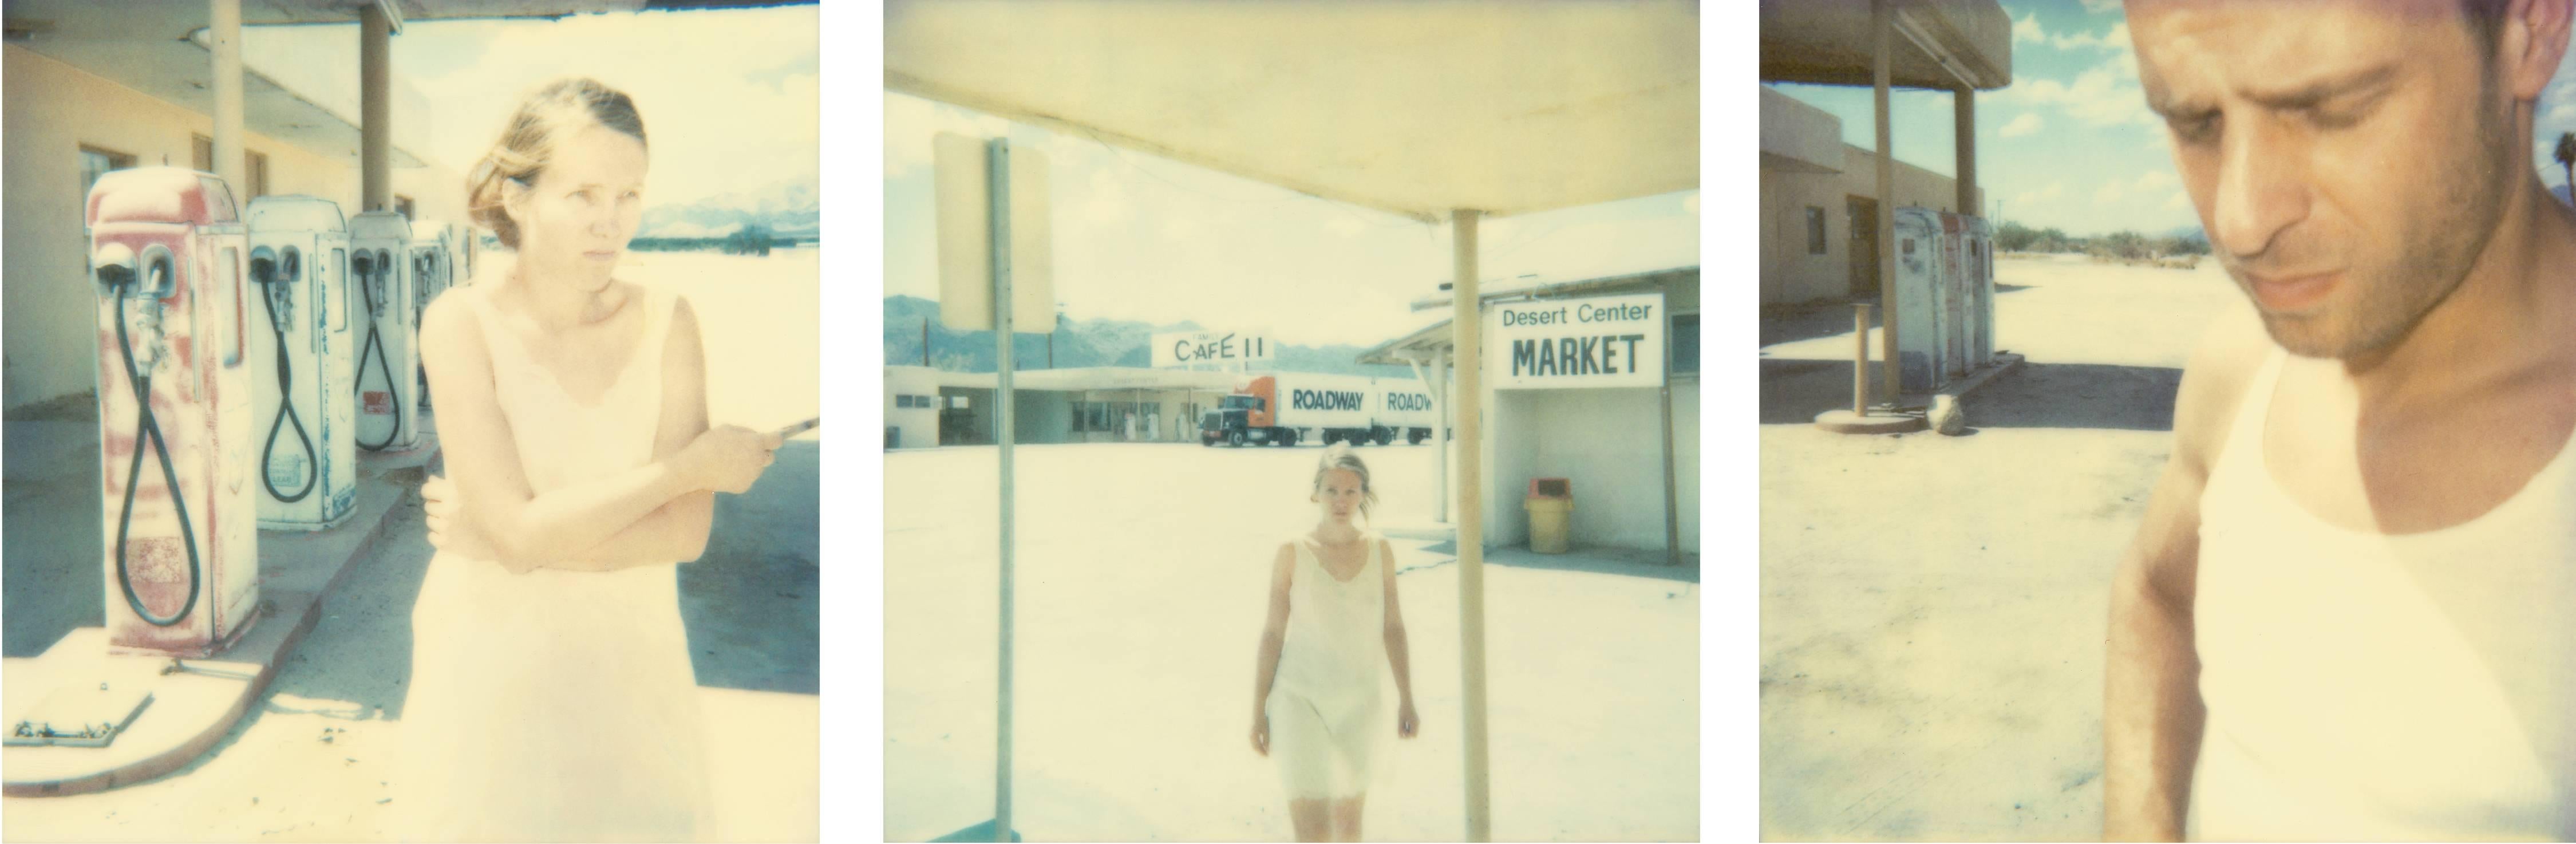 Gasstation (triptych) - Polaroid, Contemporary, 21st Century, Color, Portrait